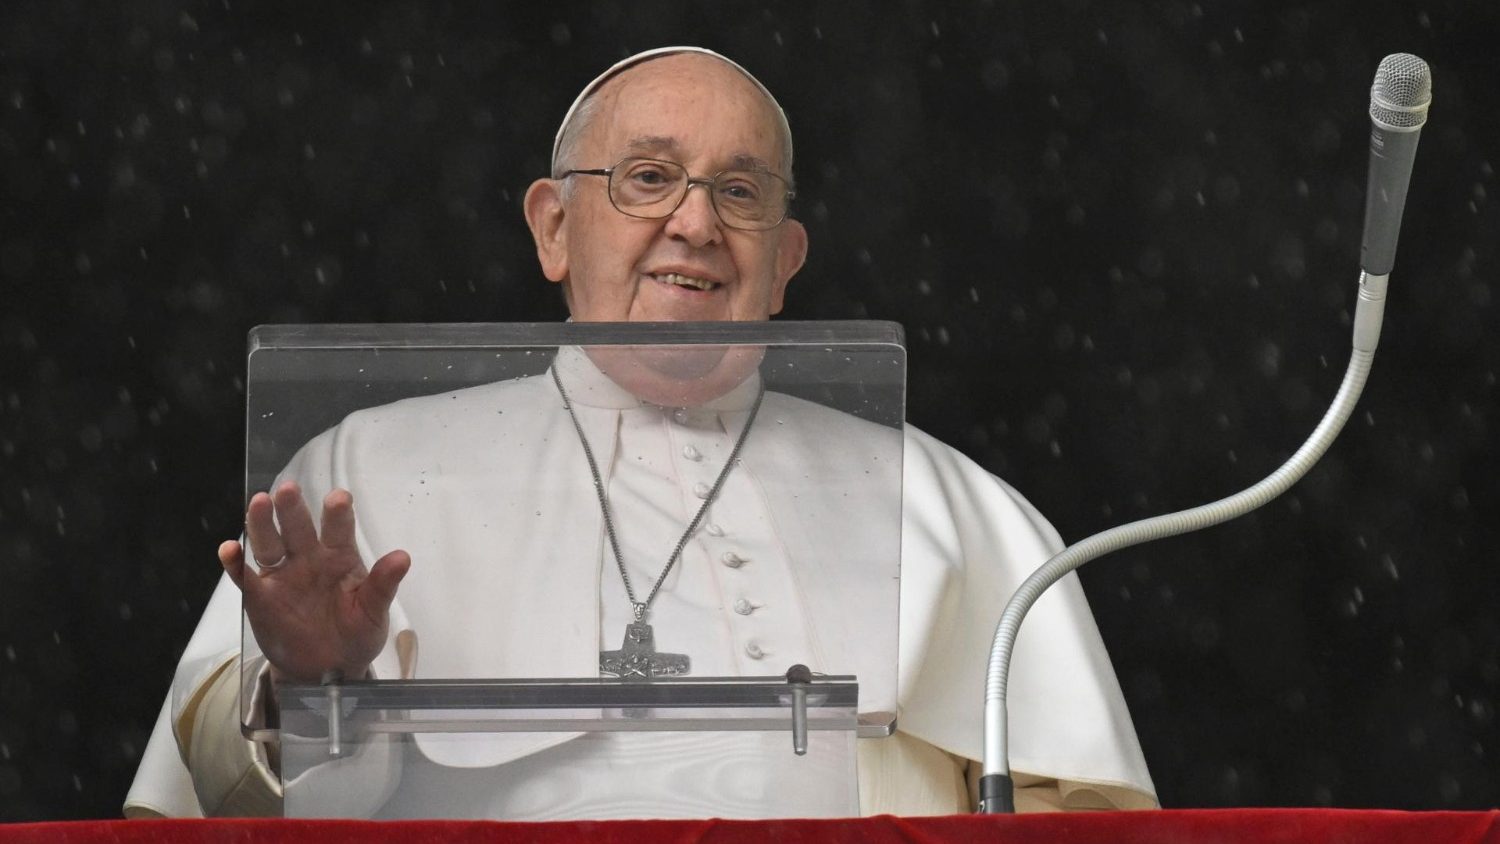 Il Papa: in un mondo sempre più virtuale, prendiamoci cura degli altri con gesti concreti